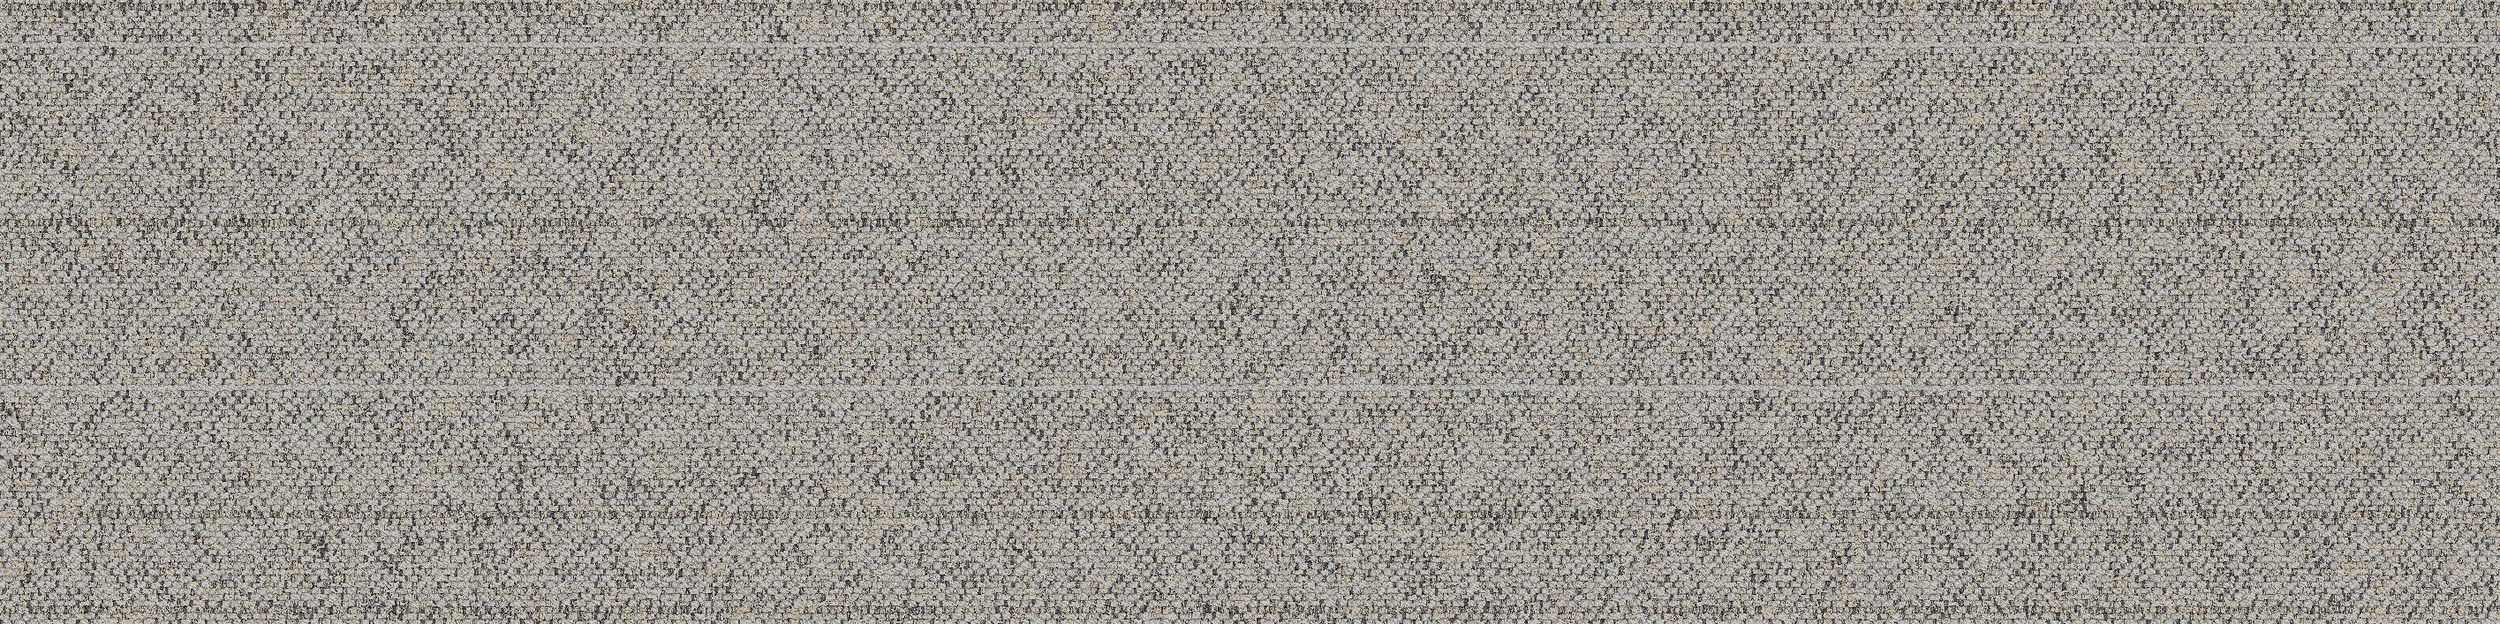 WW860 Carpet Tile In Linen Tweed afbeeldingnummer 2